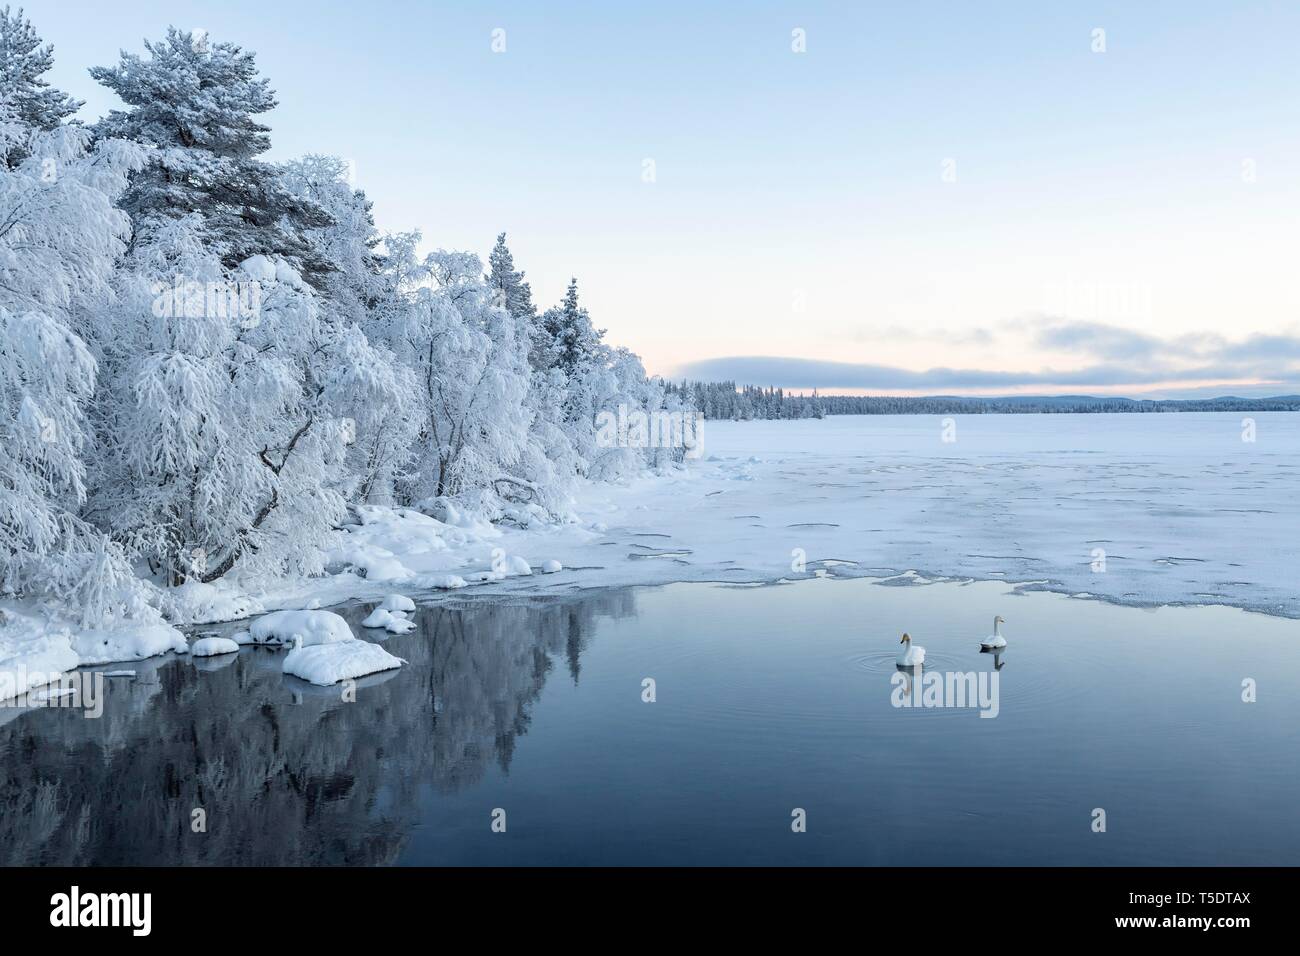 Cygne chanteur (Cygnus cygnus) dans l'eau, en grande partie en glace d'un lac, paysage d'hiver, Muonio, Laponie, Finlande Banque D'Images